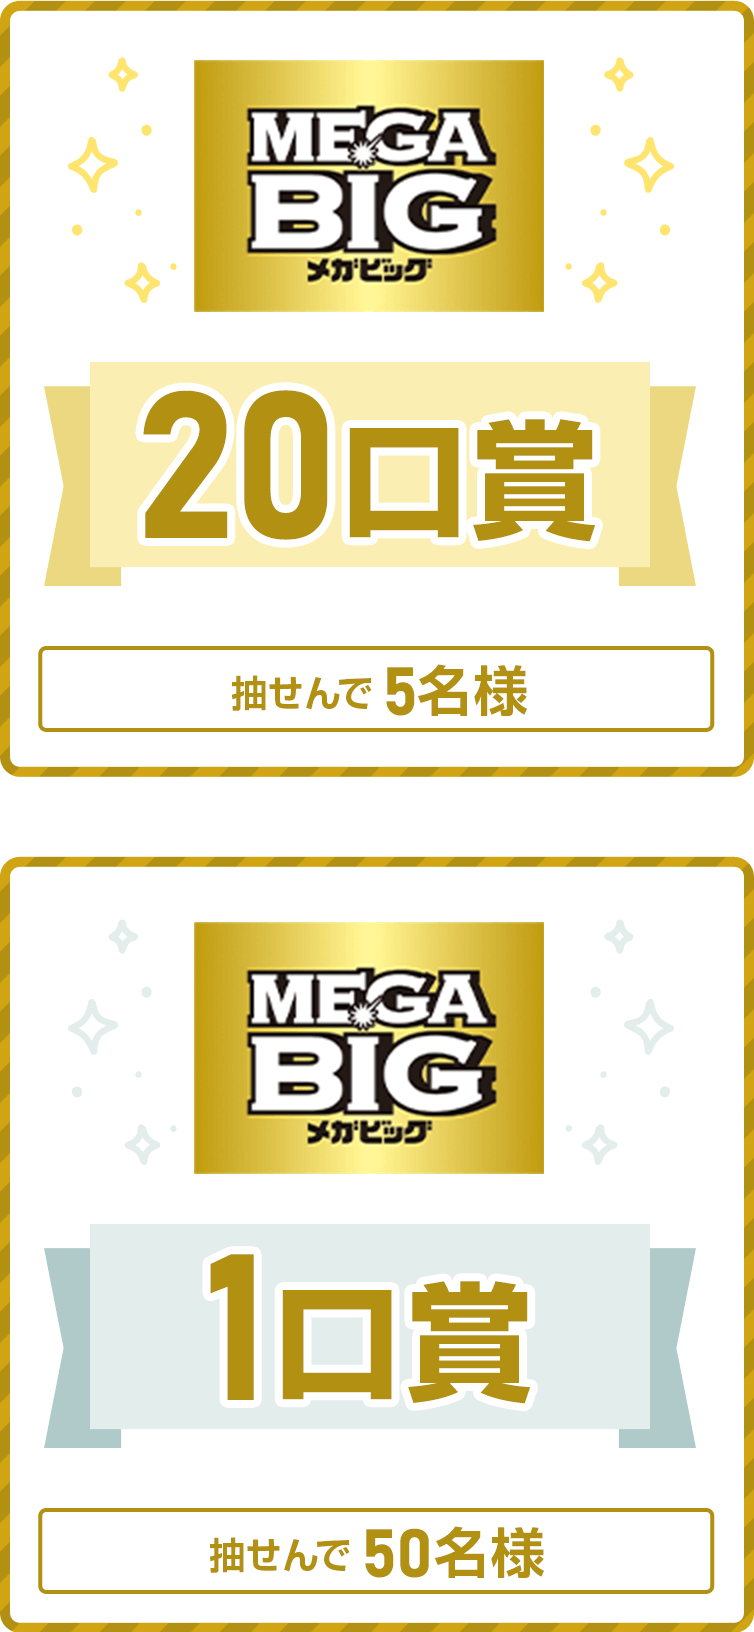 
            
              MEGA BIG20口賞
              抽せんで5名さまに、MEGA BIG20口（6,000円相当）を進呈いたします。
              
              MEGA BIG1口賞
              抽せんで50名さまに、MEGA BIG1口（300円相当）を進呈いたします。
              
            